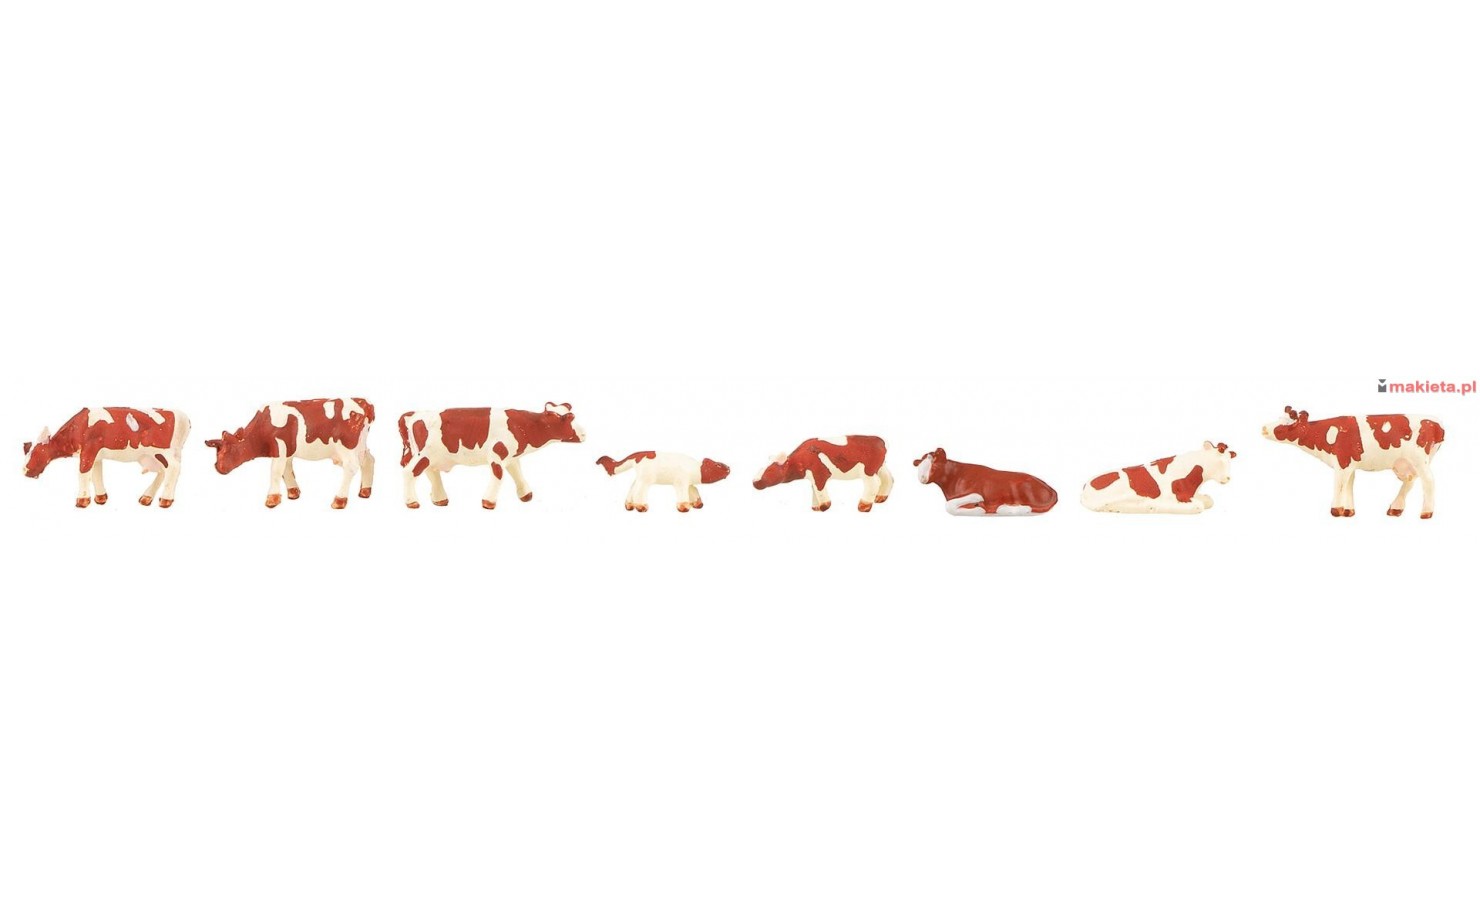 Faller 155902. Krowy brązowe w białe łaty, zestaw figurek, skala N.